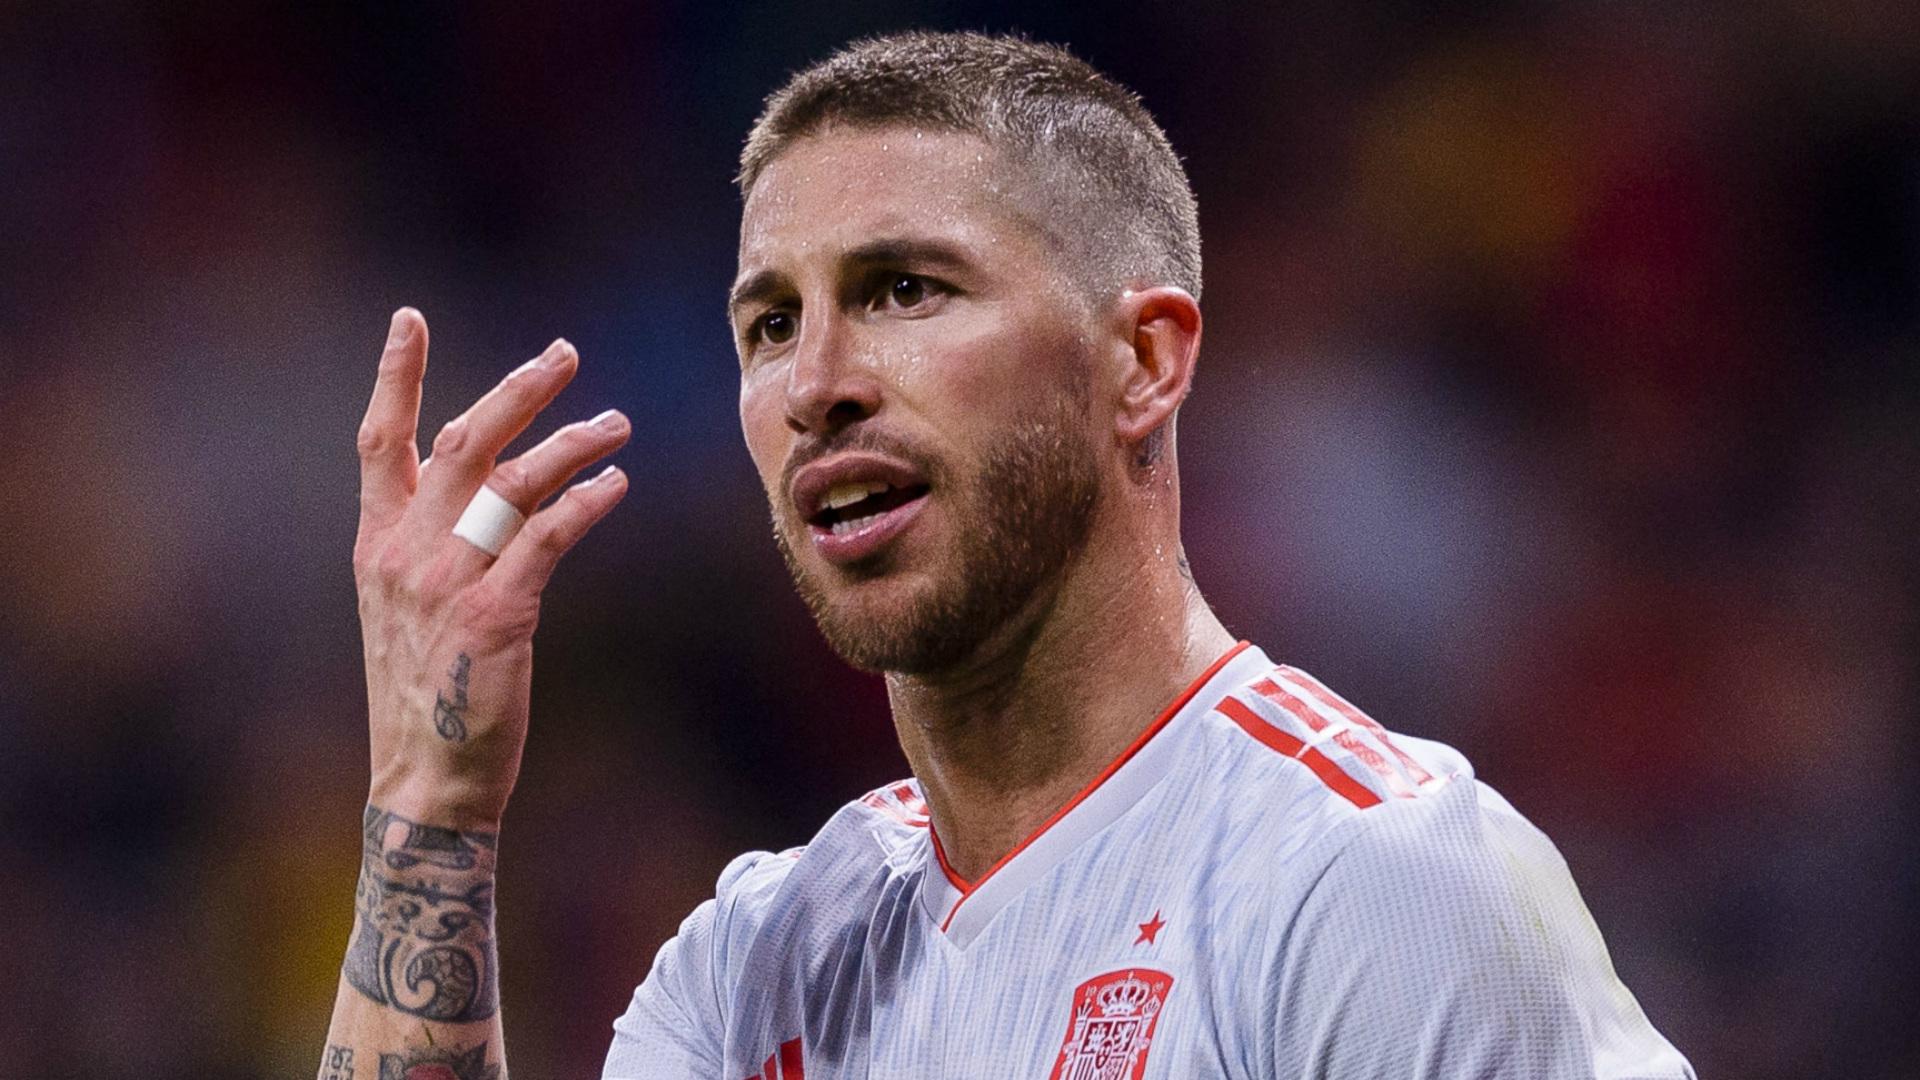 Sergio Ramos breaks silence amid Spain's World Cup turmoil. Soccer